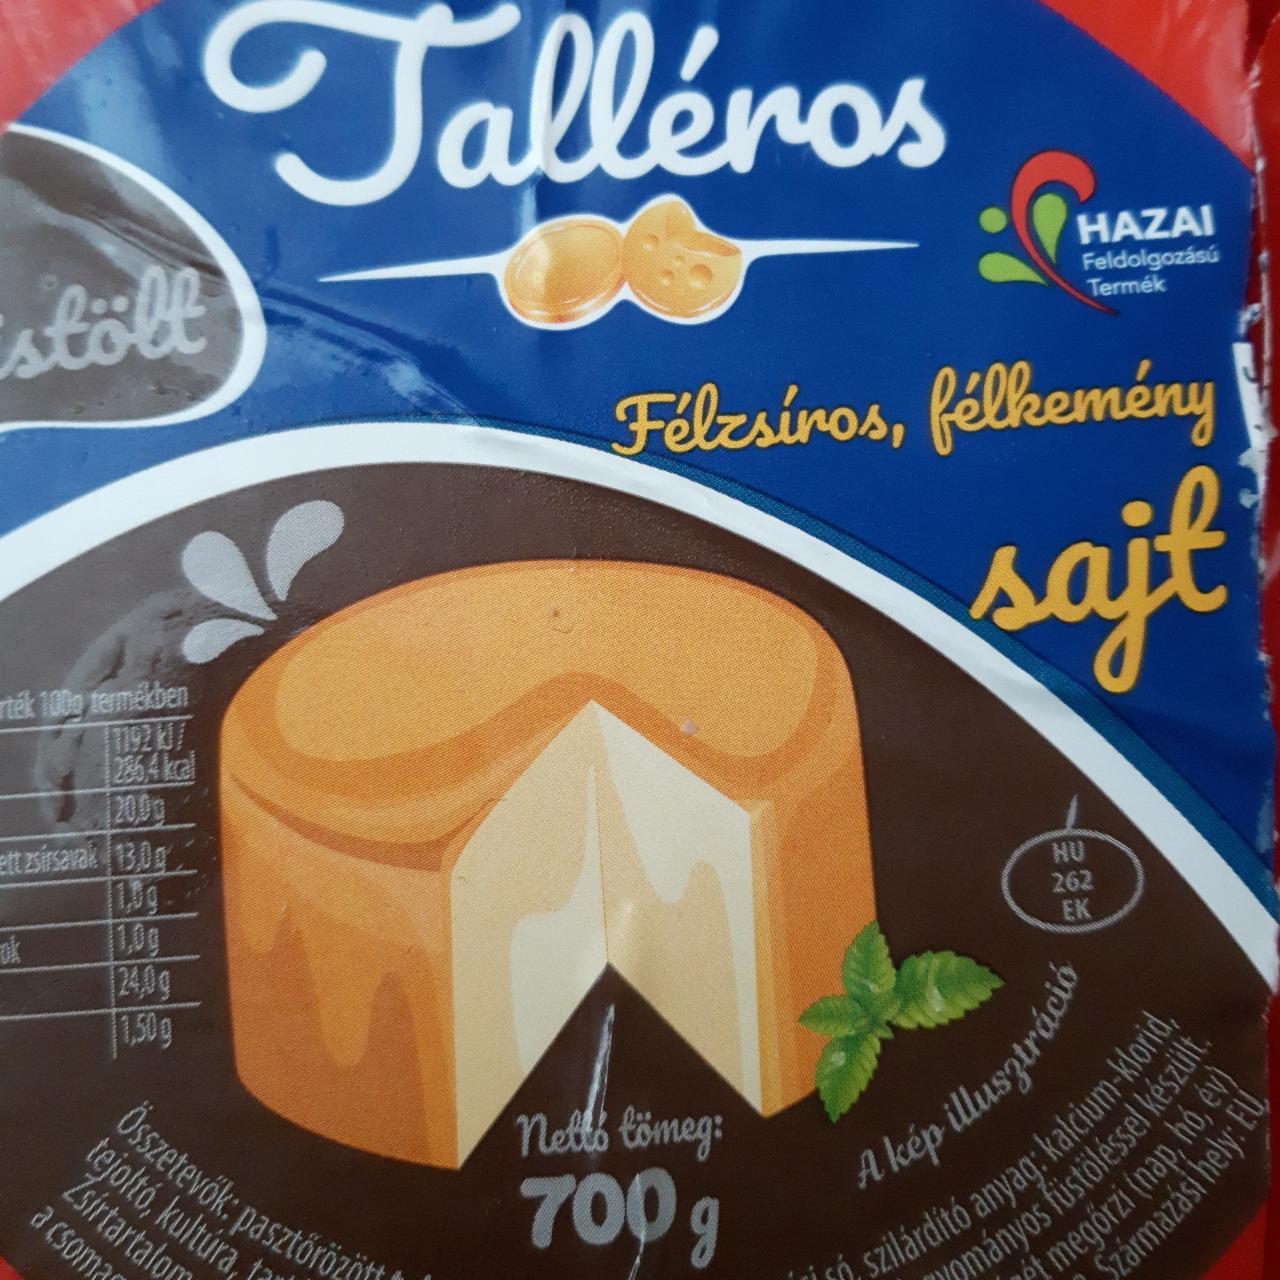 Képek - Talléros félzsíros, félkemény füstölt sajt 700 g